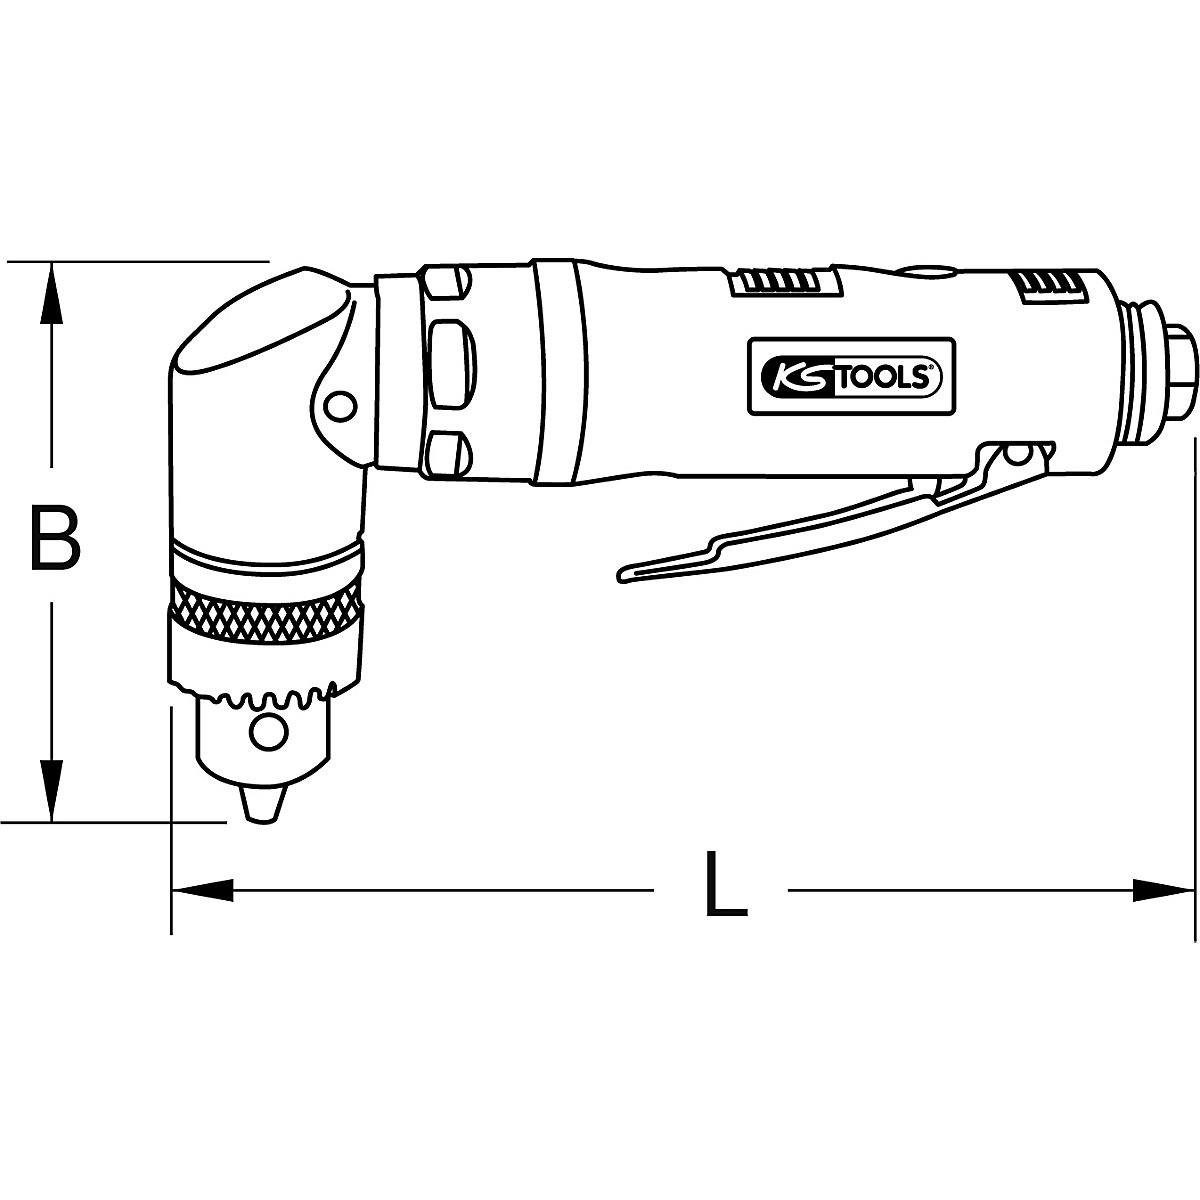 Taladradora angular de aire comprimido – KS Tools (Imagen del producto 2)-1